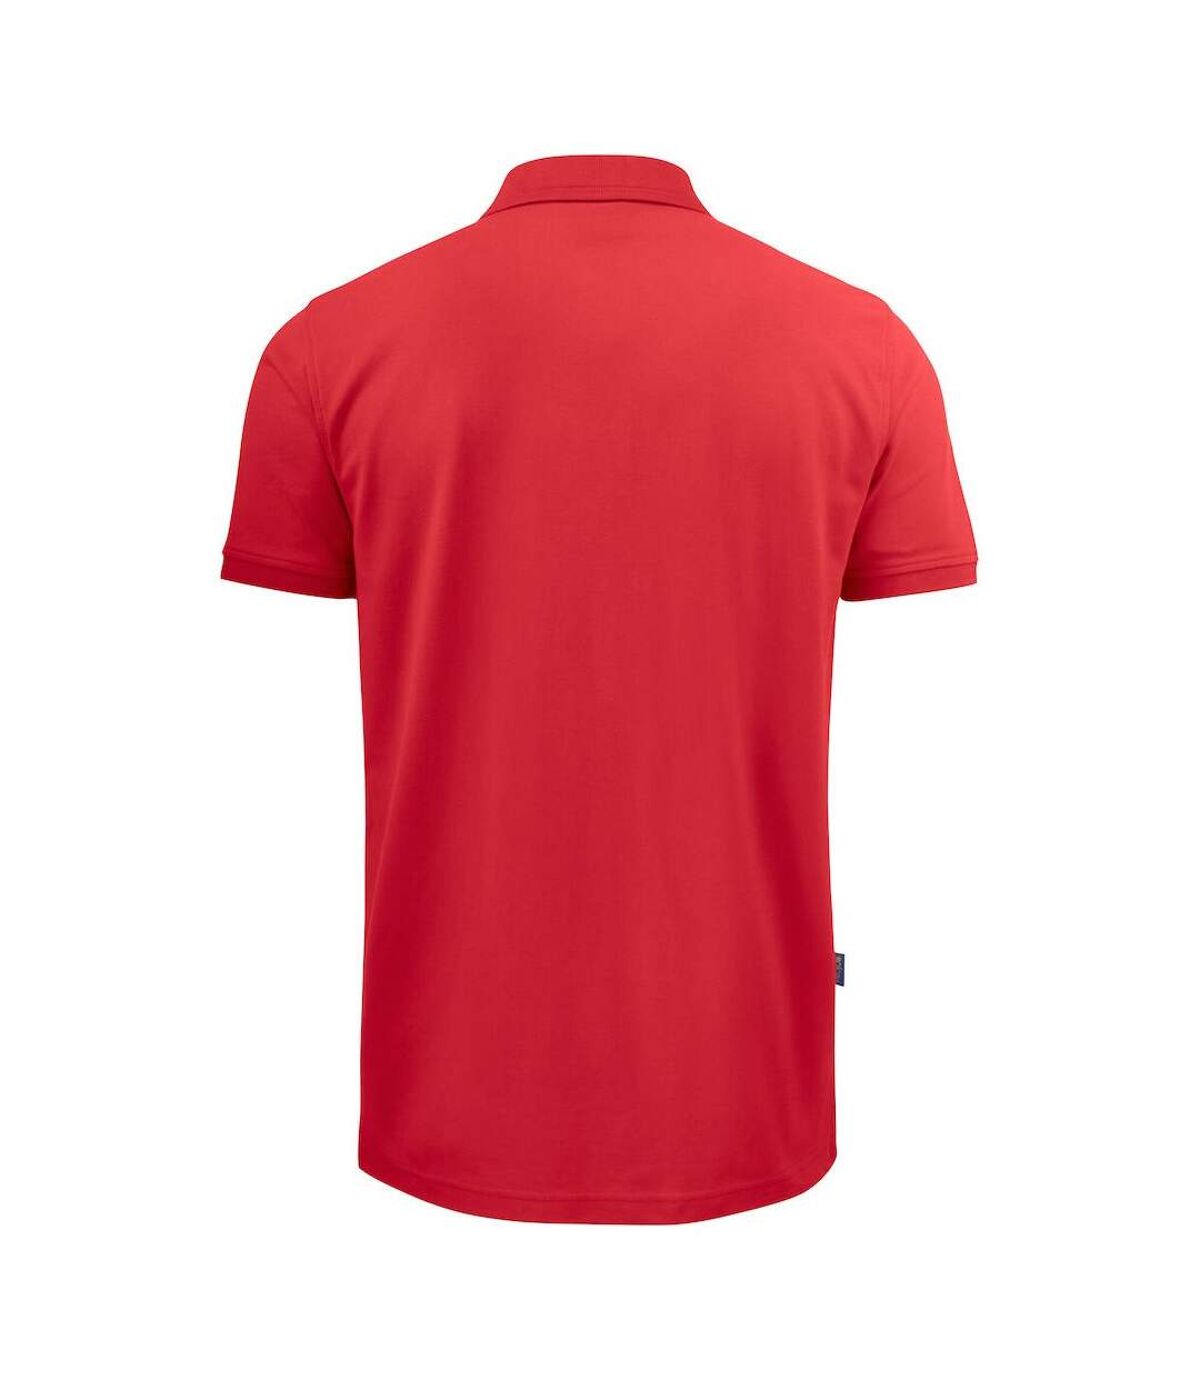 Projob Mens Pique Polo Shirt (Red)